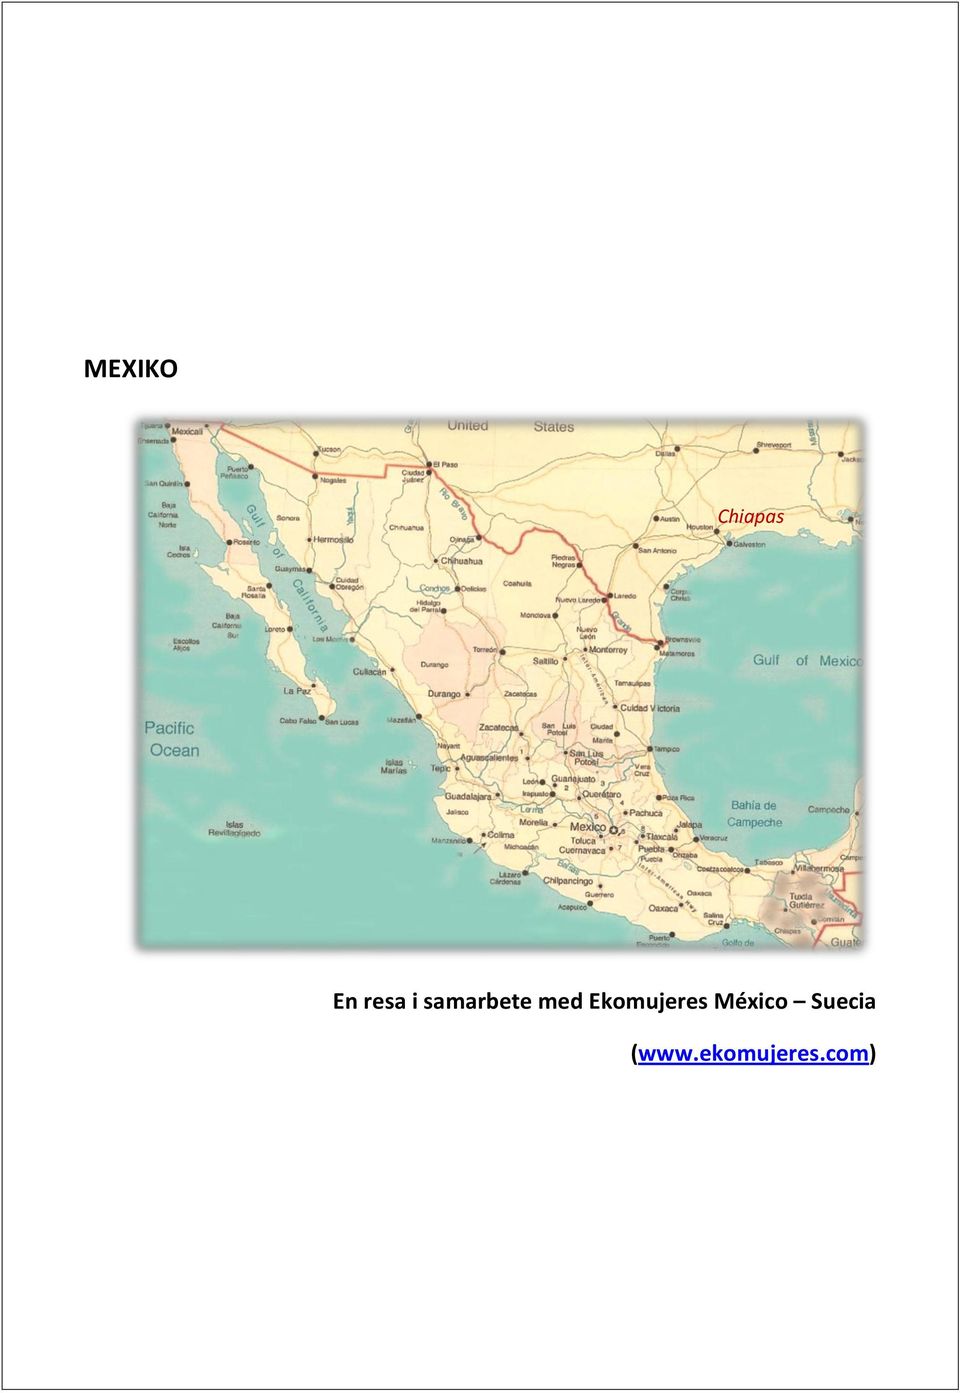 Ekomujeres México